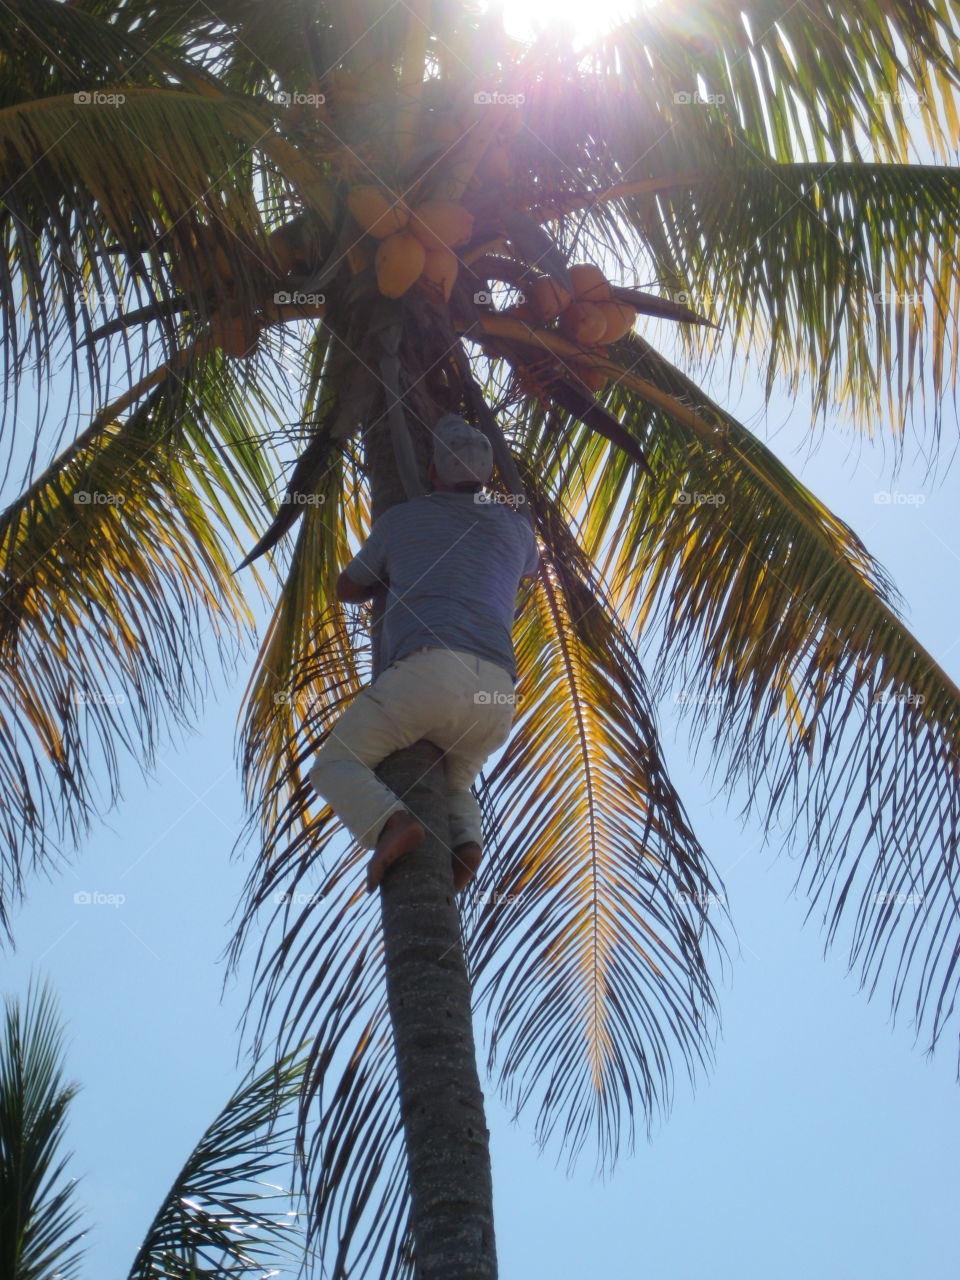 Coconut tree climber